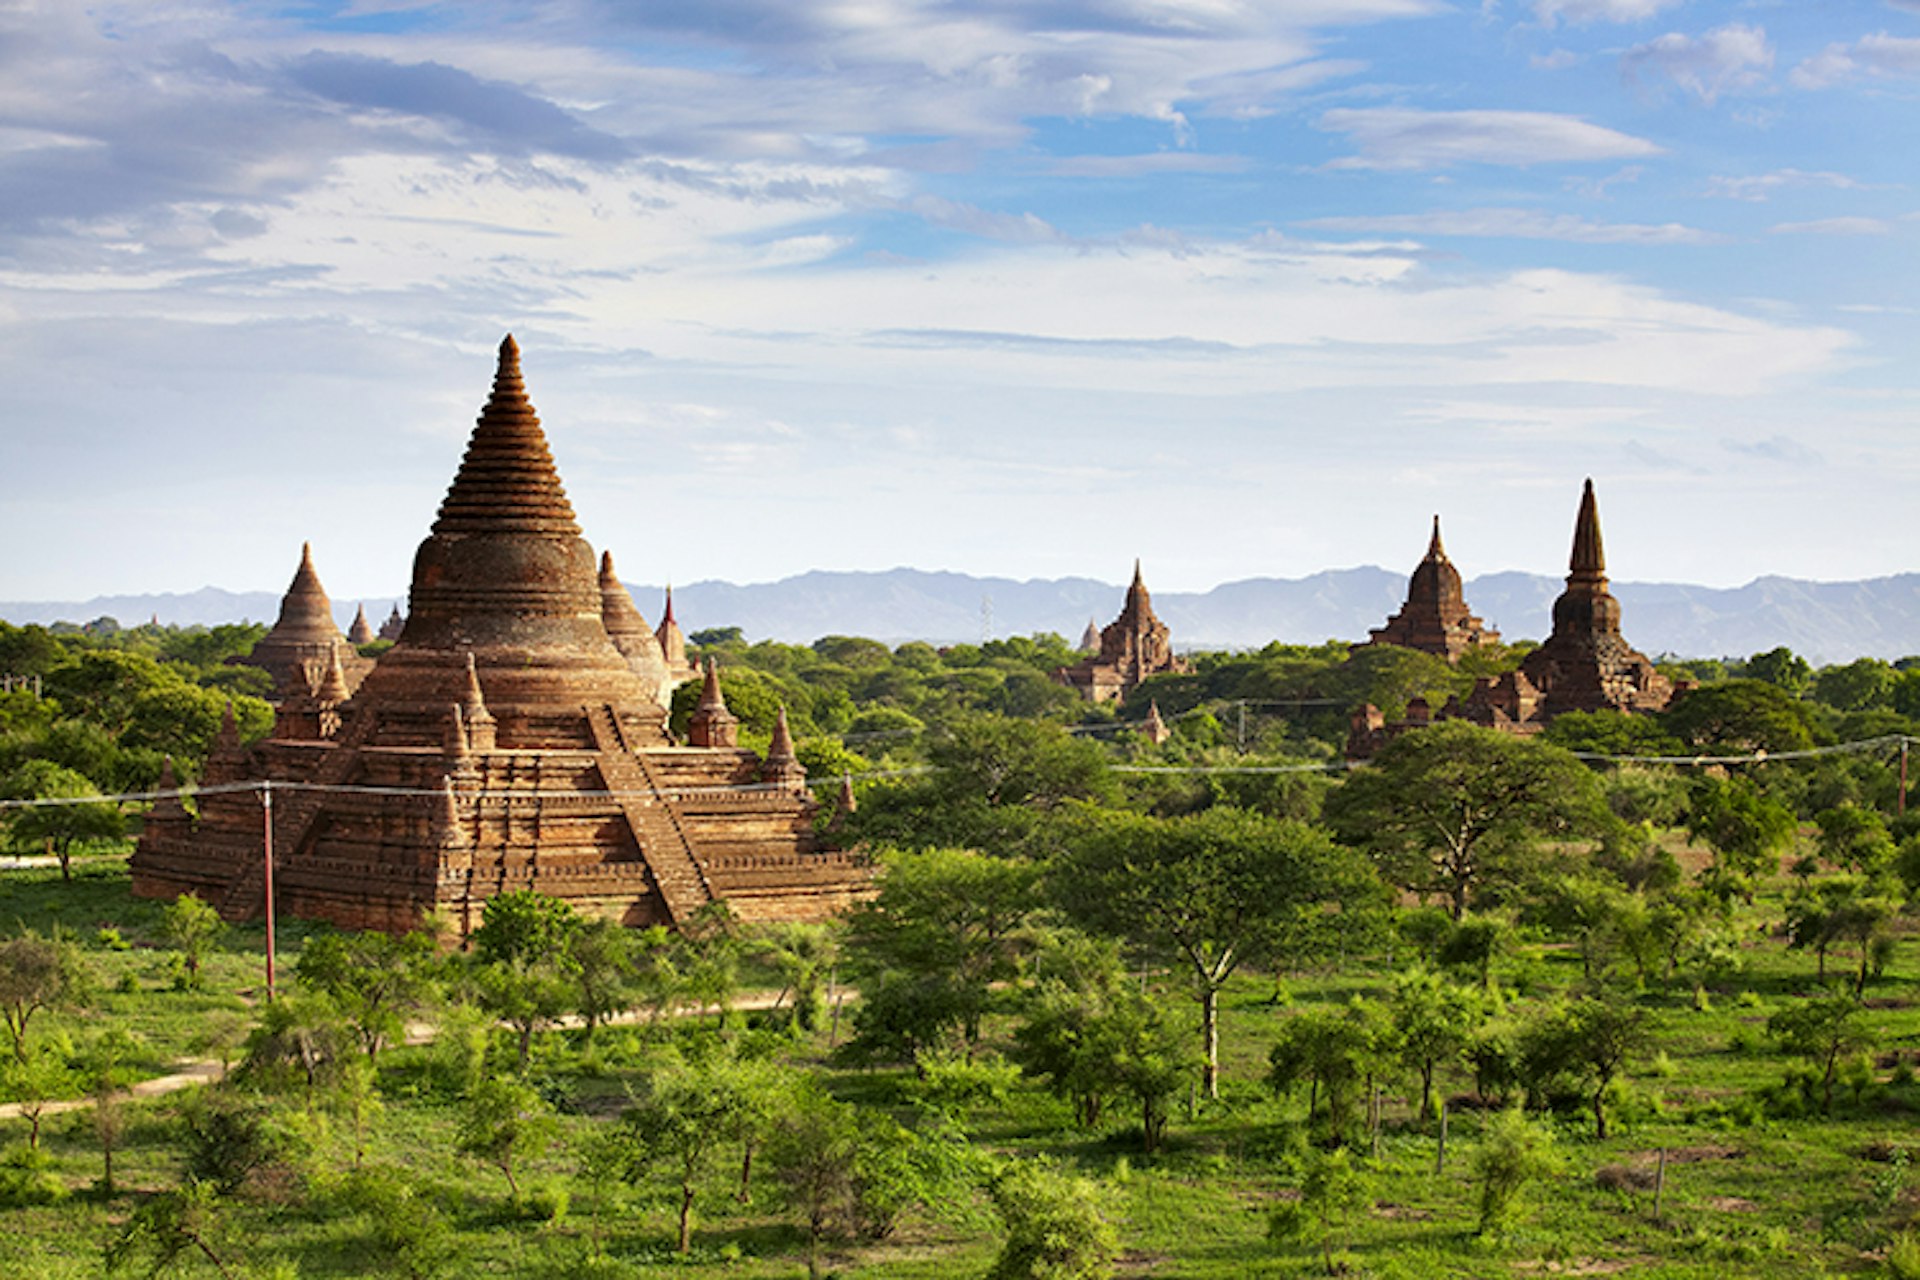 Buddhist pagodas in Bagan.